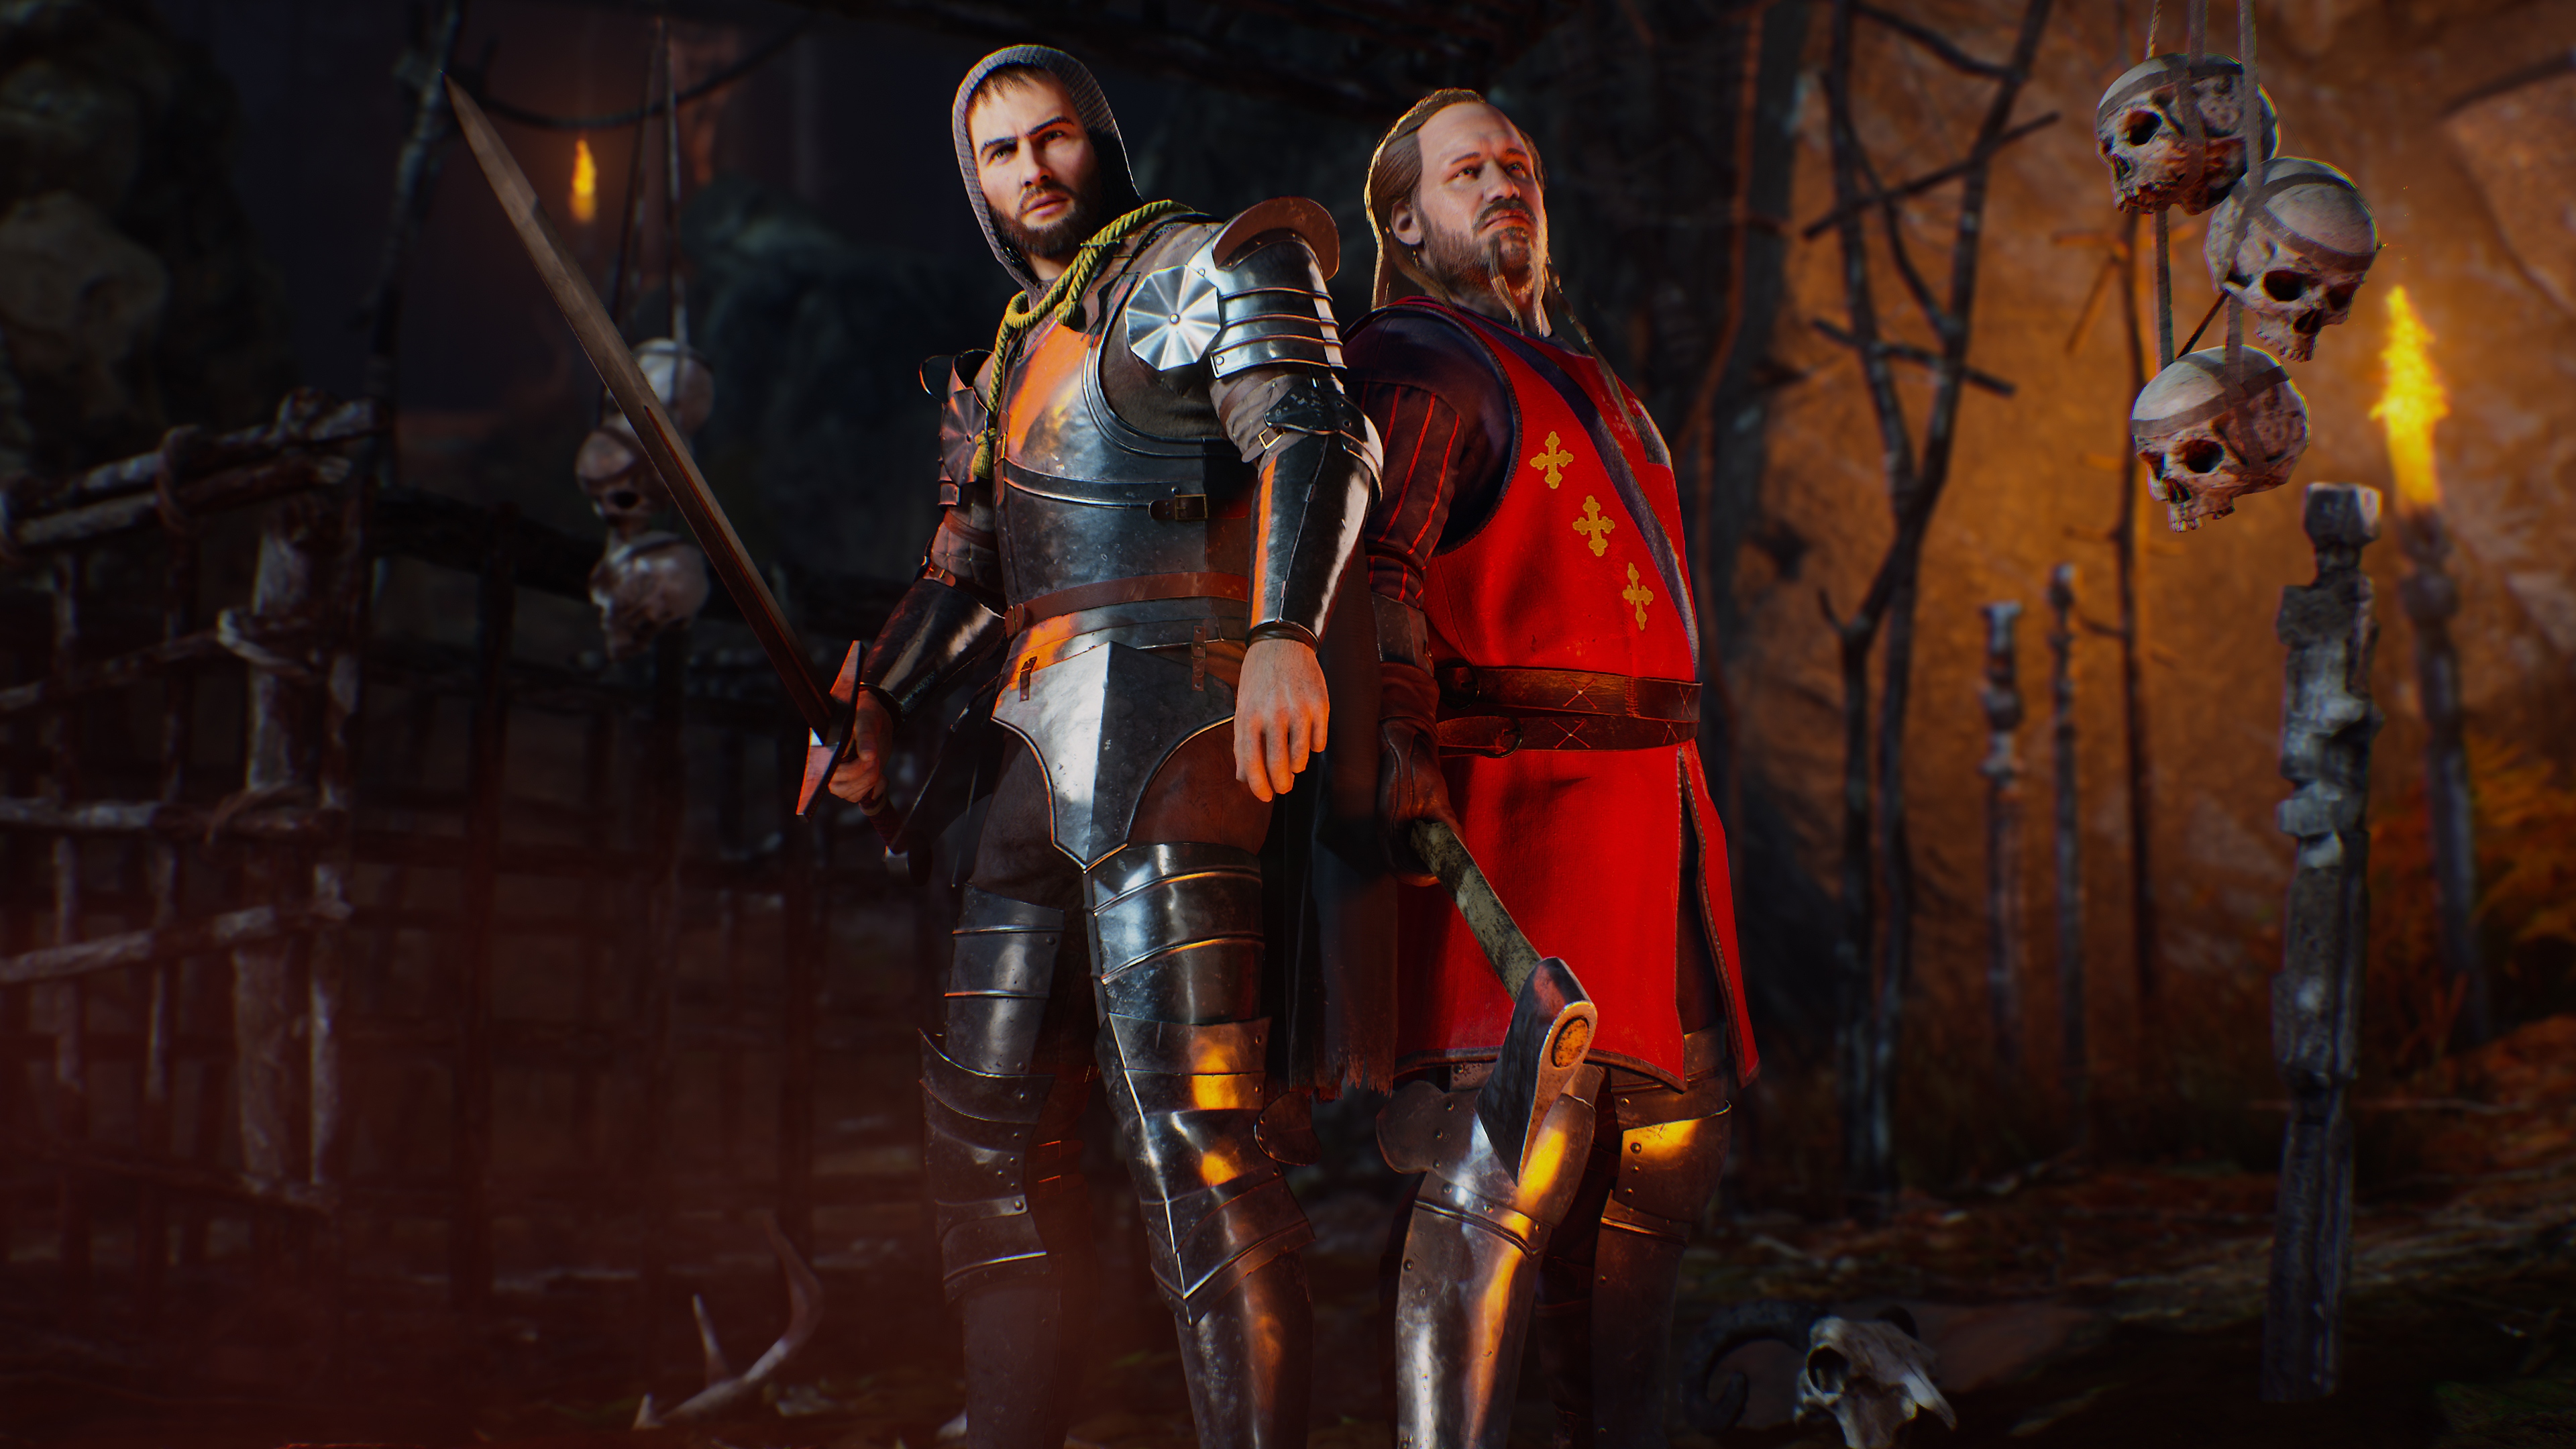 Evil Dead: The Game-screenshot van twee personages in een ridderachtige outfit